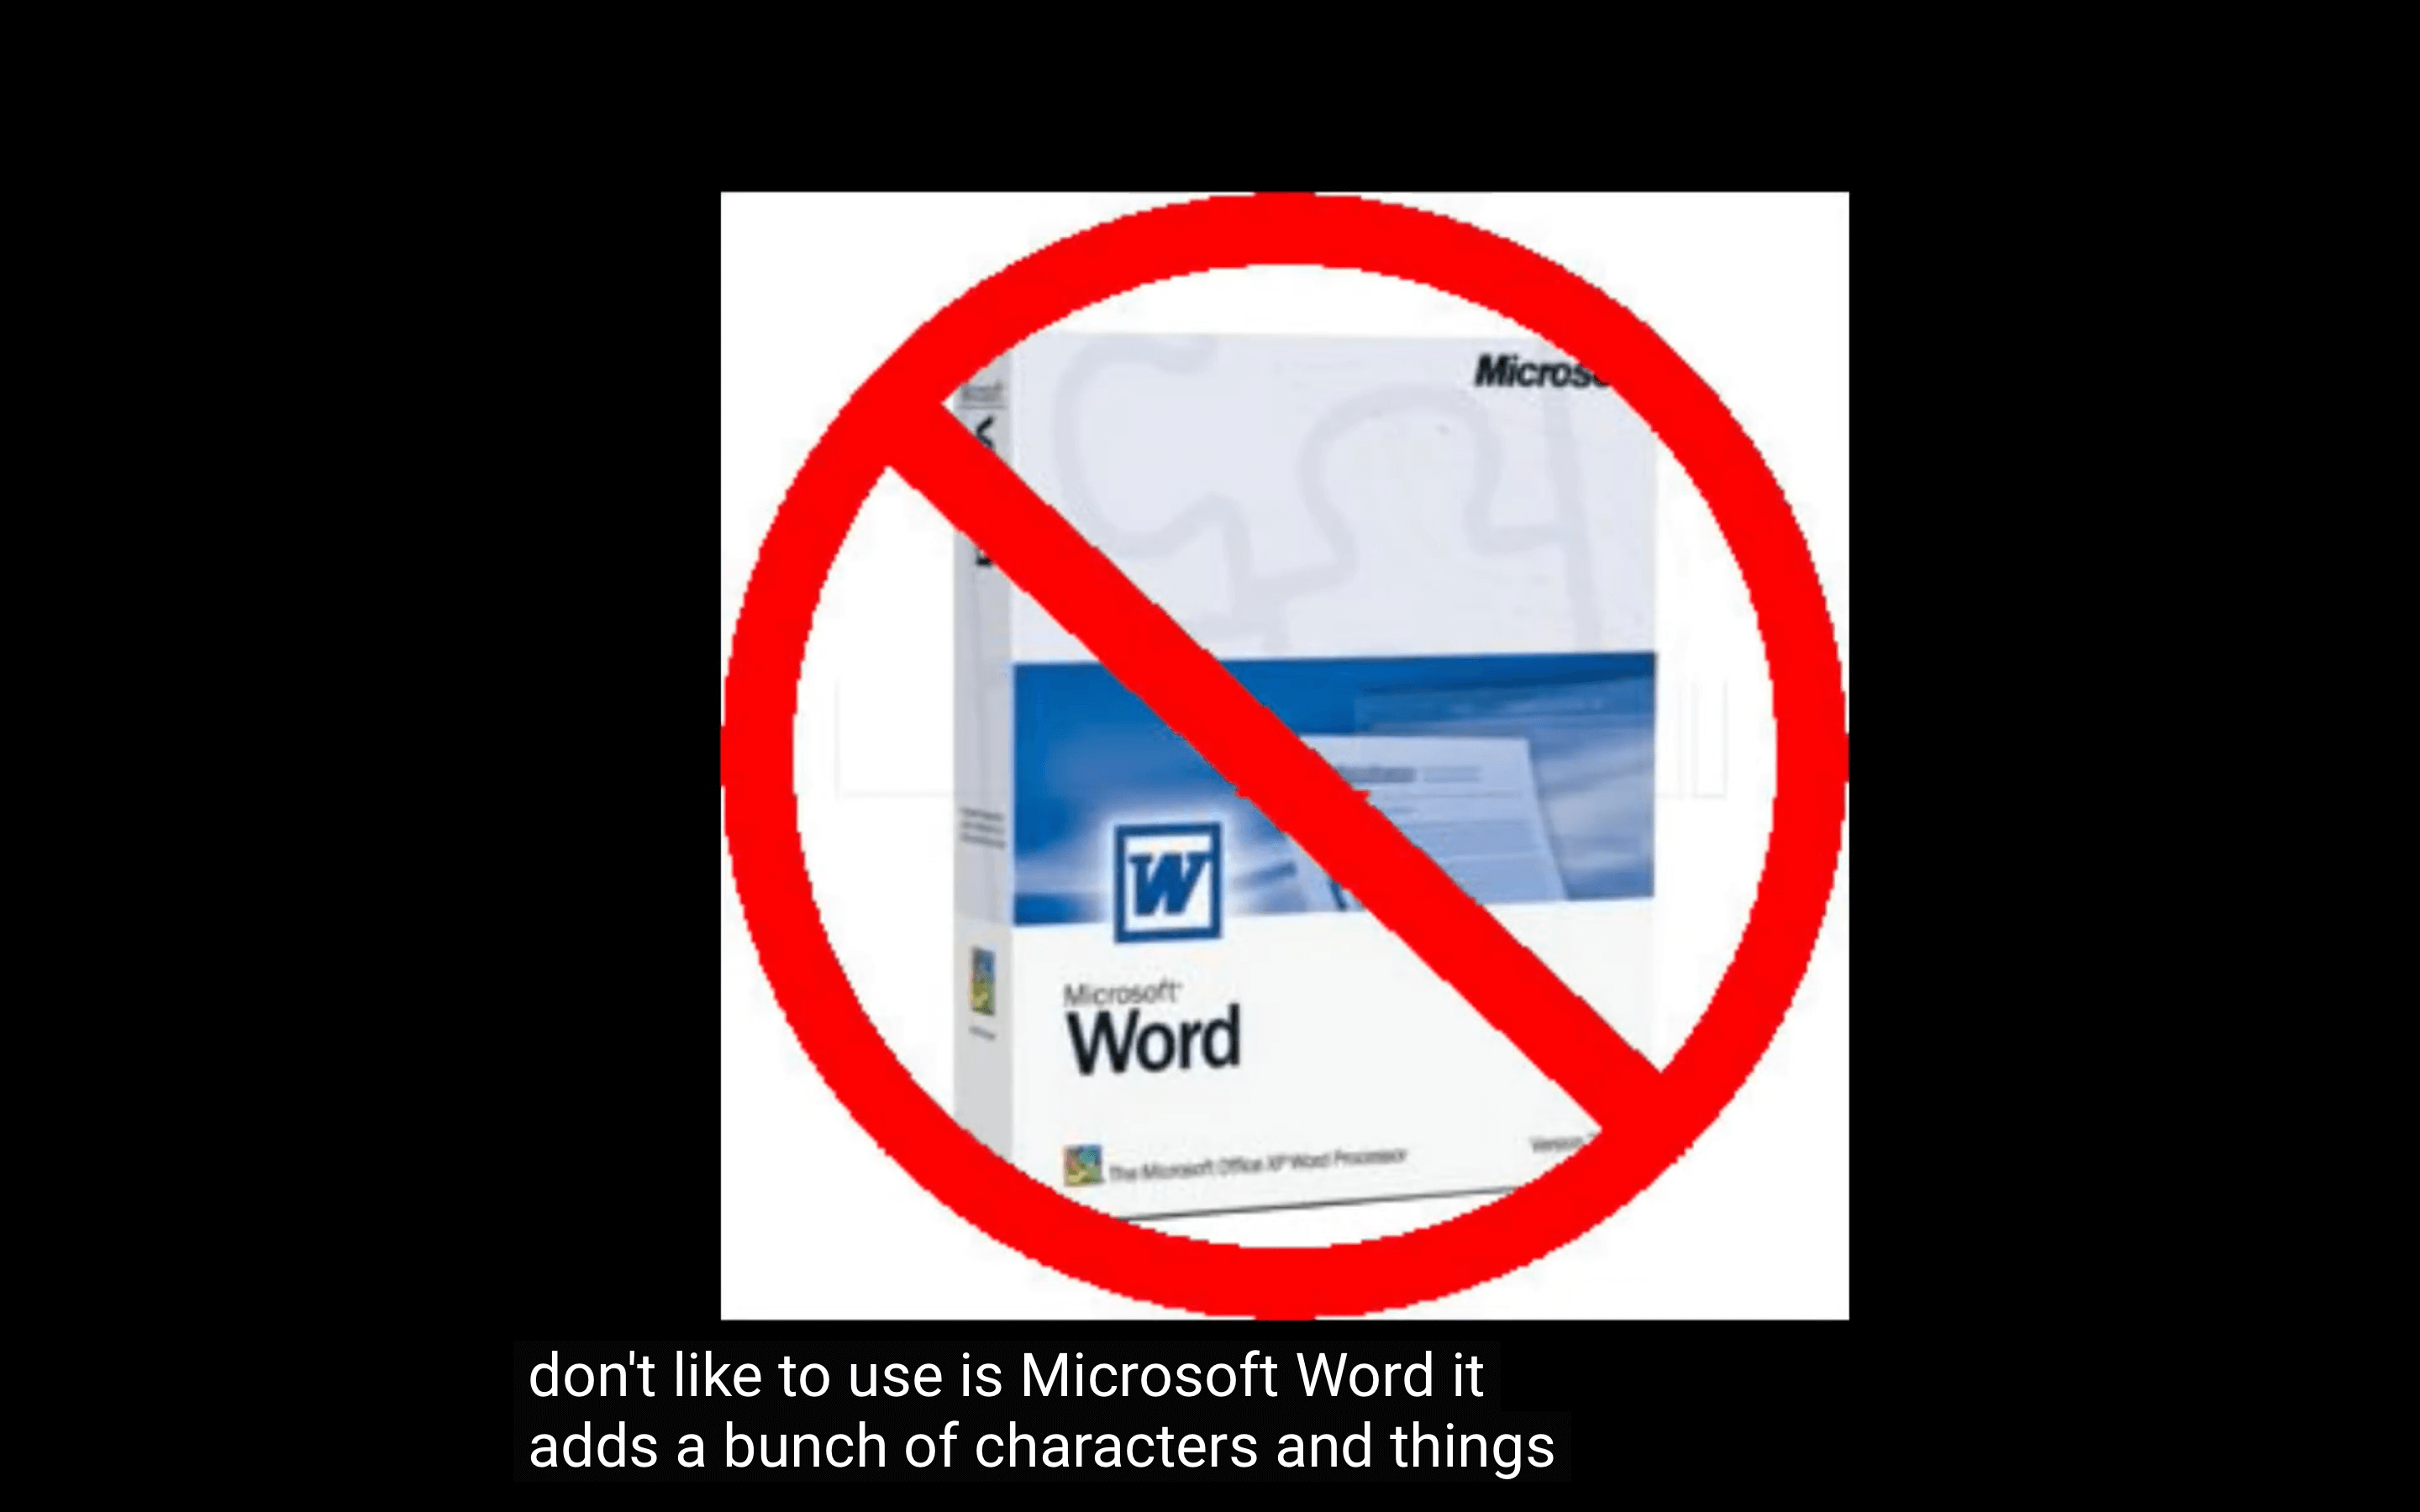 我讨厌使用 Microsoft Word，图片来源于视频 https://youtu.be/JG4fqd8pEgE 截图